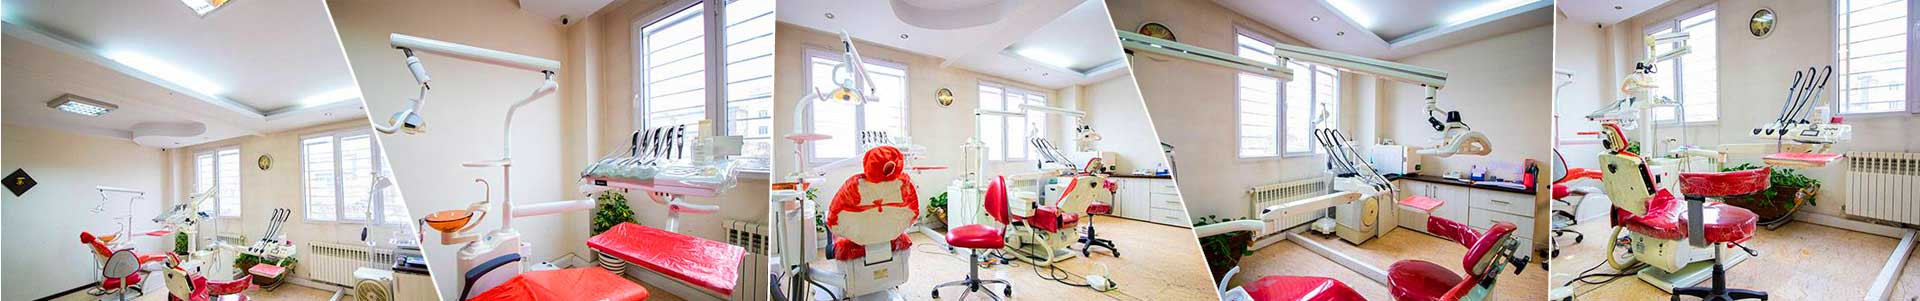 بهترین خرید مطب دندان پزشکی دکتر مرادی تهران با بیشترین درصد تخفیف در قیمت - -140%